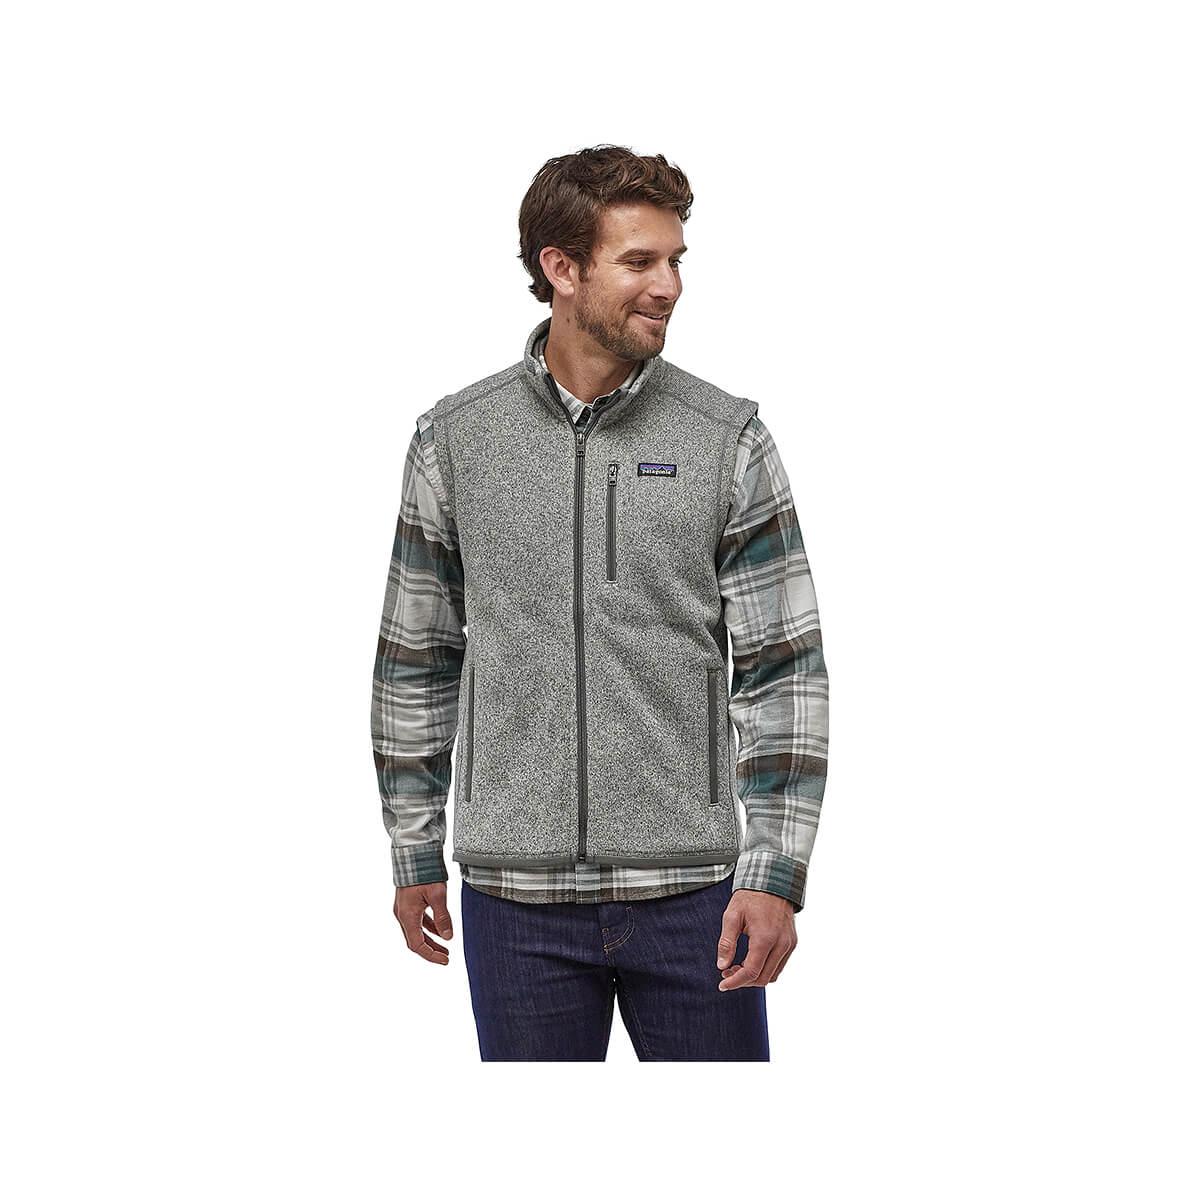  Men's Better Sweater Vest